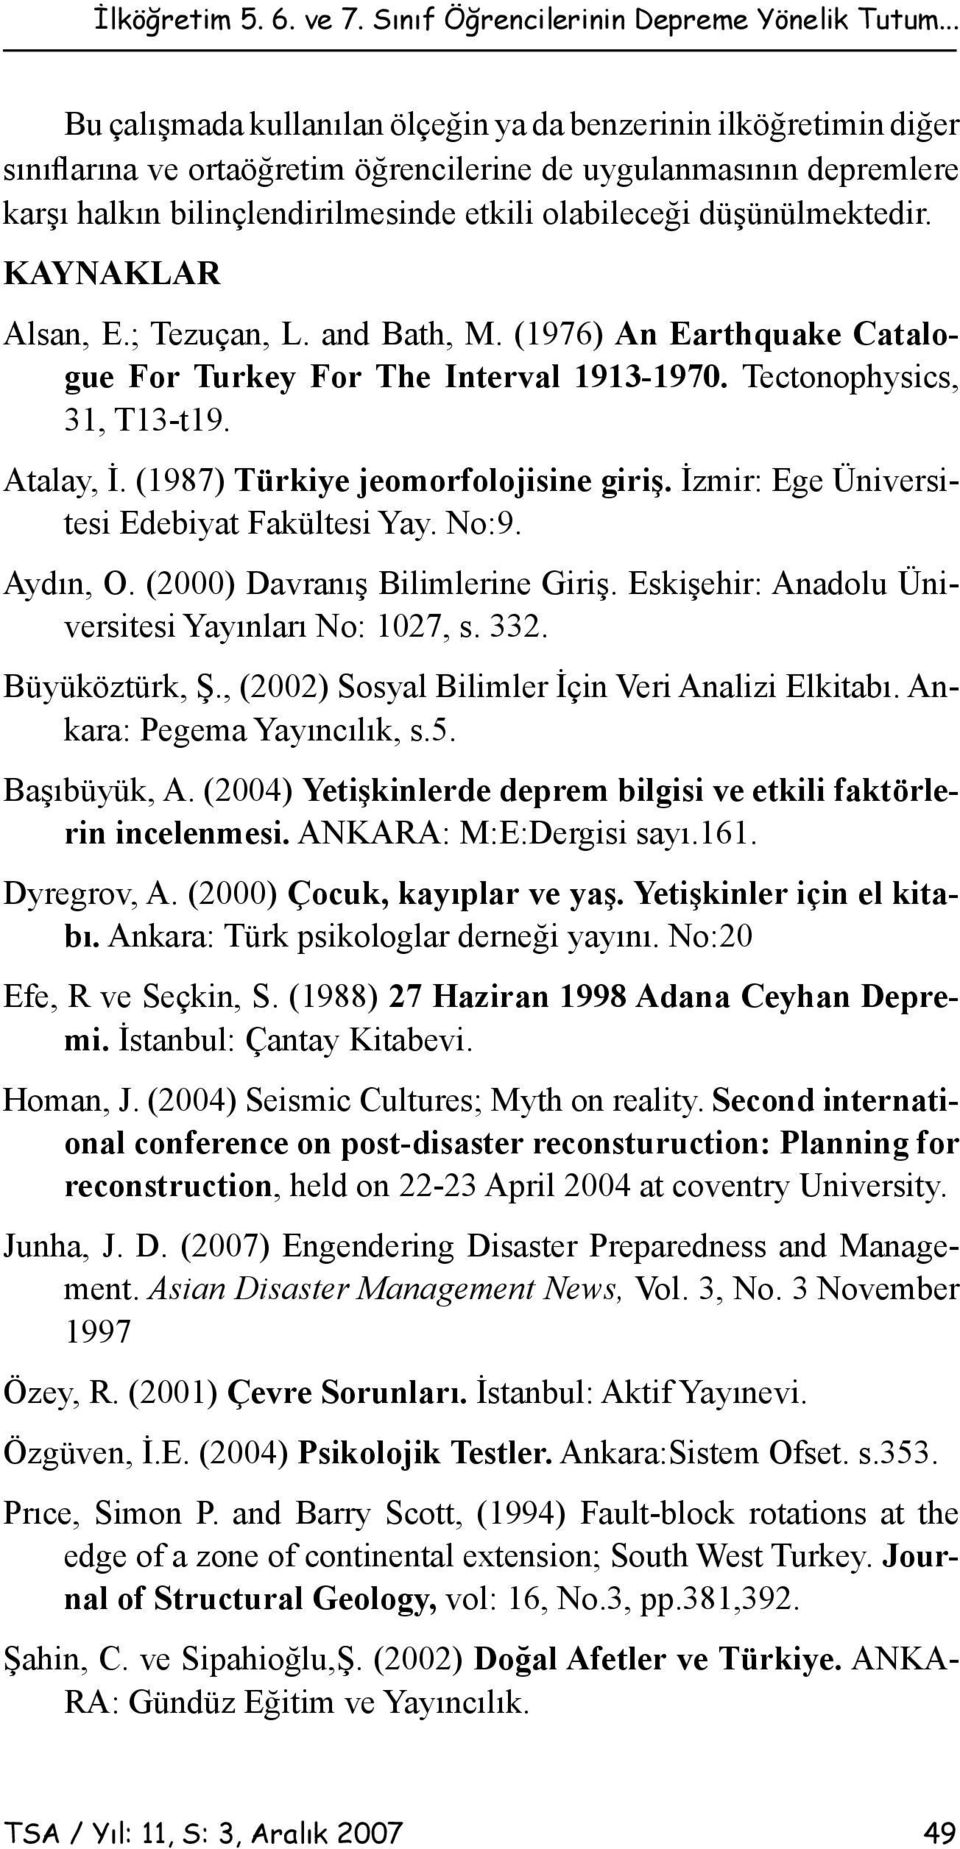 düşünülmektedir. KAYNAKLAR Alsan, E.; Tezuçan, L. and Bath, M. (1976) An Earthquake Catalogue For Turkey For The Interval 1913-1970. Tectonophysics, 31, T13-t19. Atalay, İ.